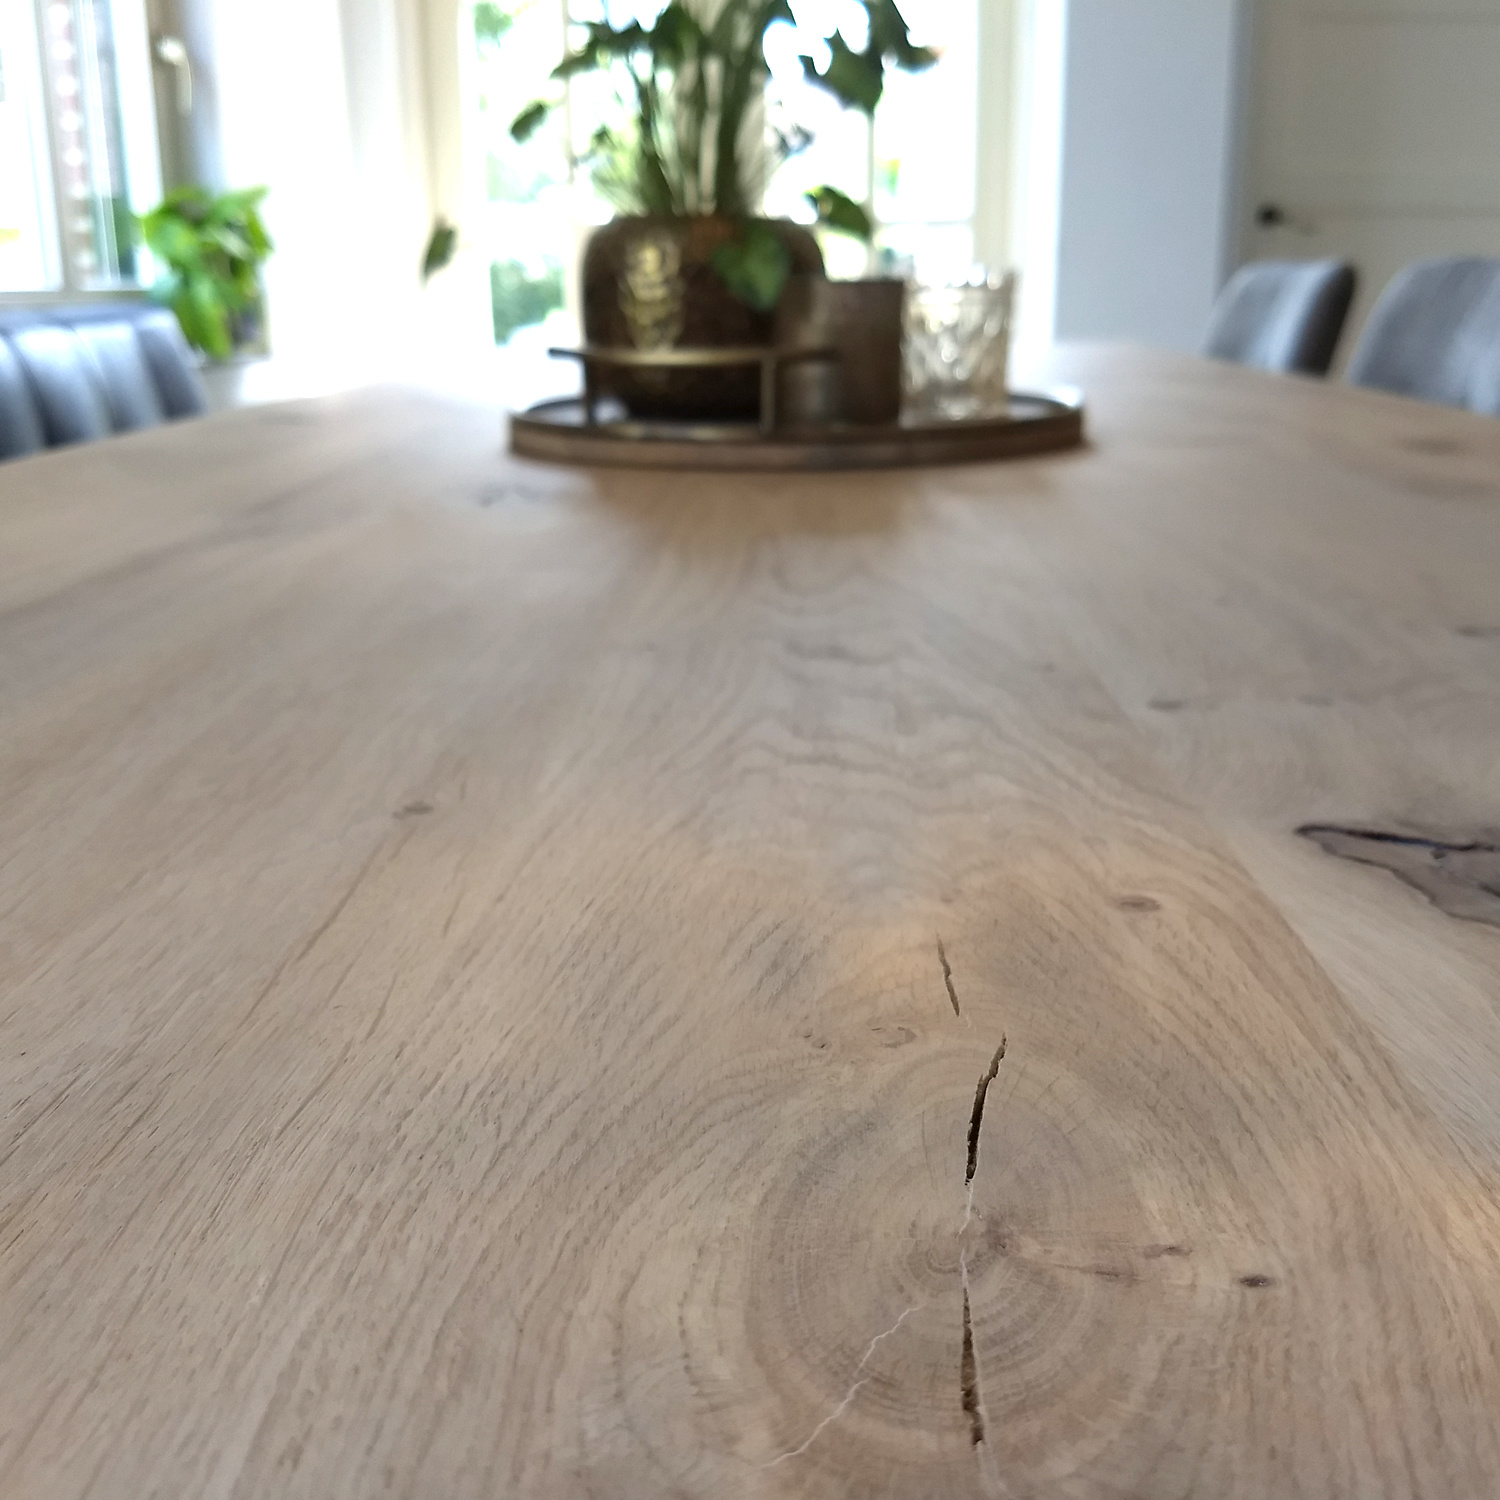  Eiken tafelblad met verjongde rand - 4 cm dik (1-laag) - Diverse afmetingen - rustiek Europees eikenhout - met brede lamellen (circa 10-12 cm) - verlijmd kd 8-12%